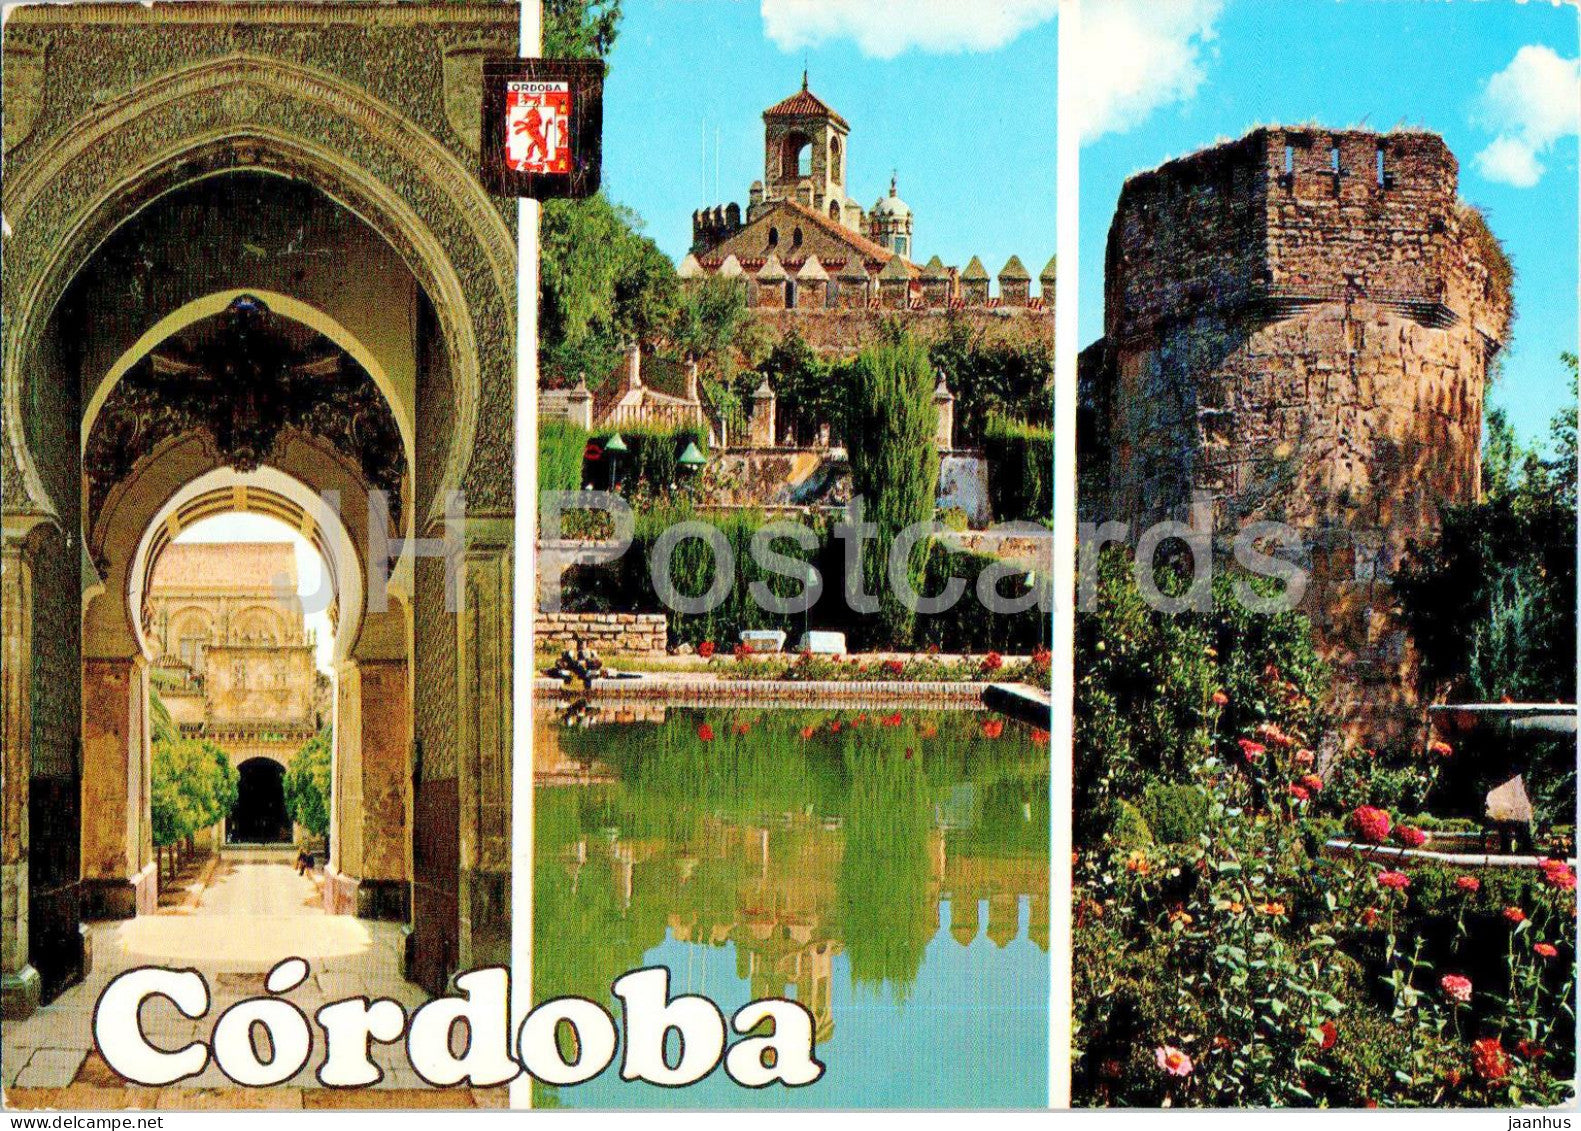 Cordoba - Mesquita Catedral - Puerta del Perdon y Jardines del Alcazar - 935 - 1976 - Spain - used - JH Postcards